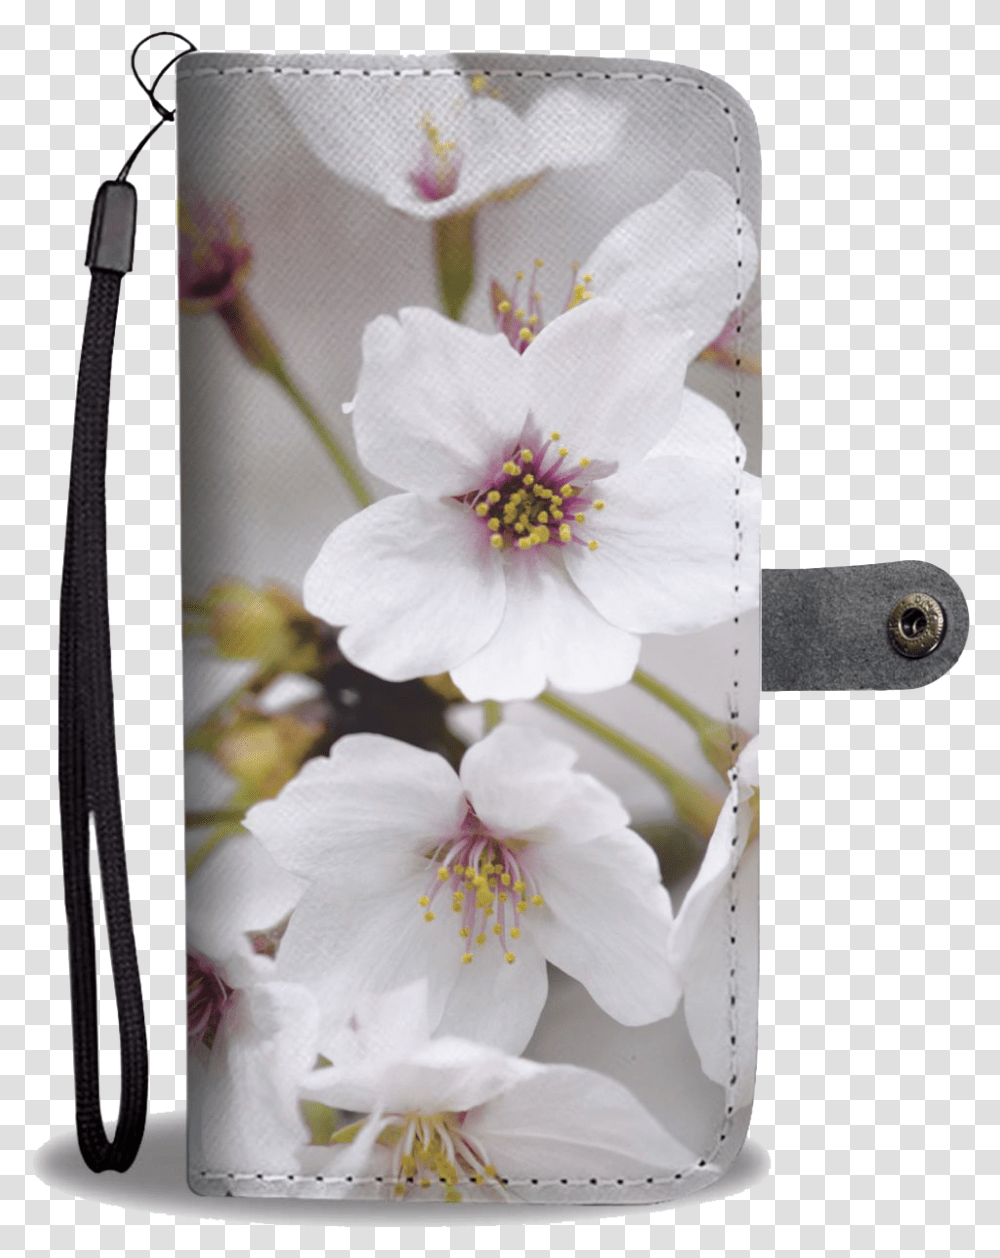 Cherry Blossom Cherry Blossom, Plant, Flower, Pollen, Geranium Transparent Png